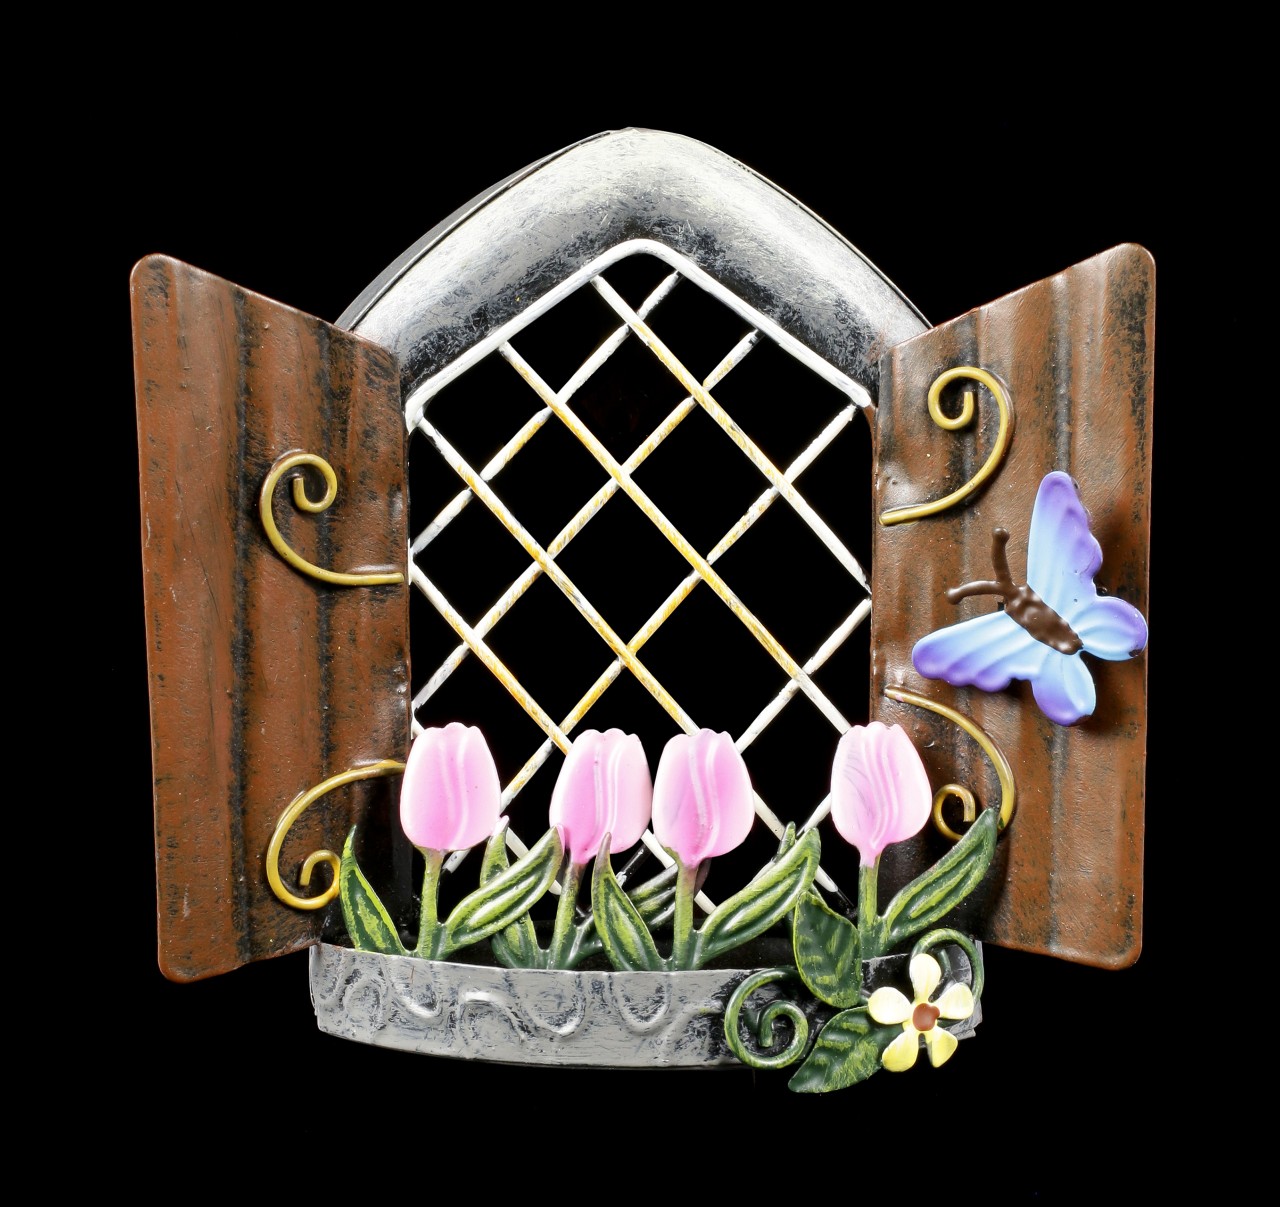 Metall Elfenfenster Wandrelief - Tulip View